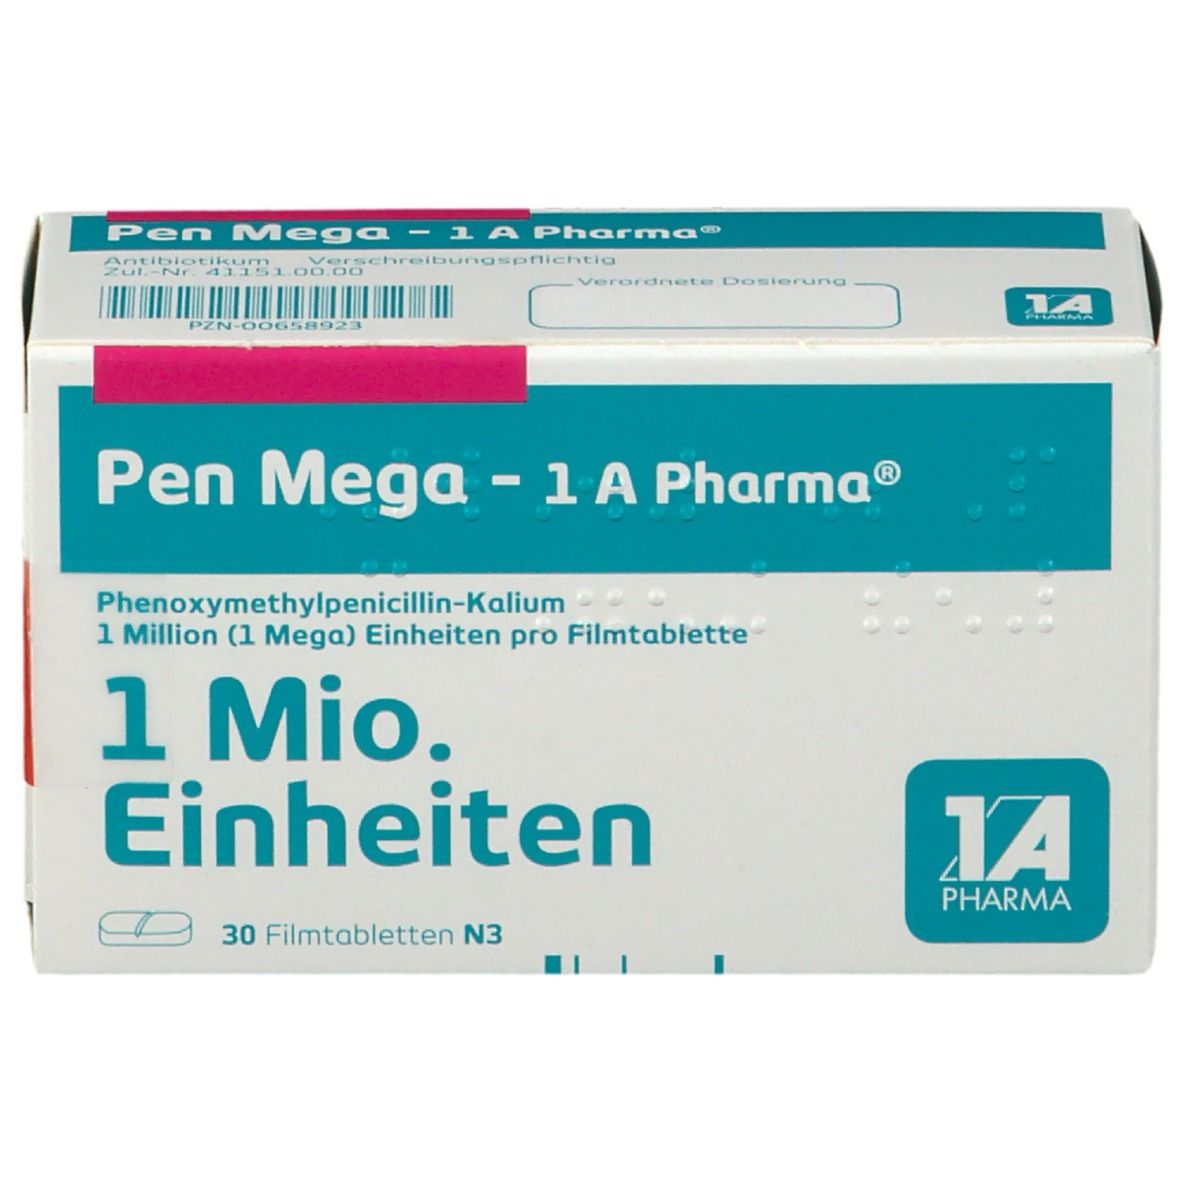 Pen Mega - 1 A Pharma®